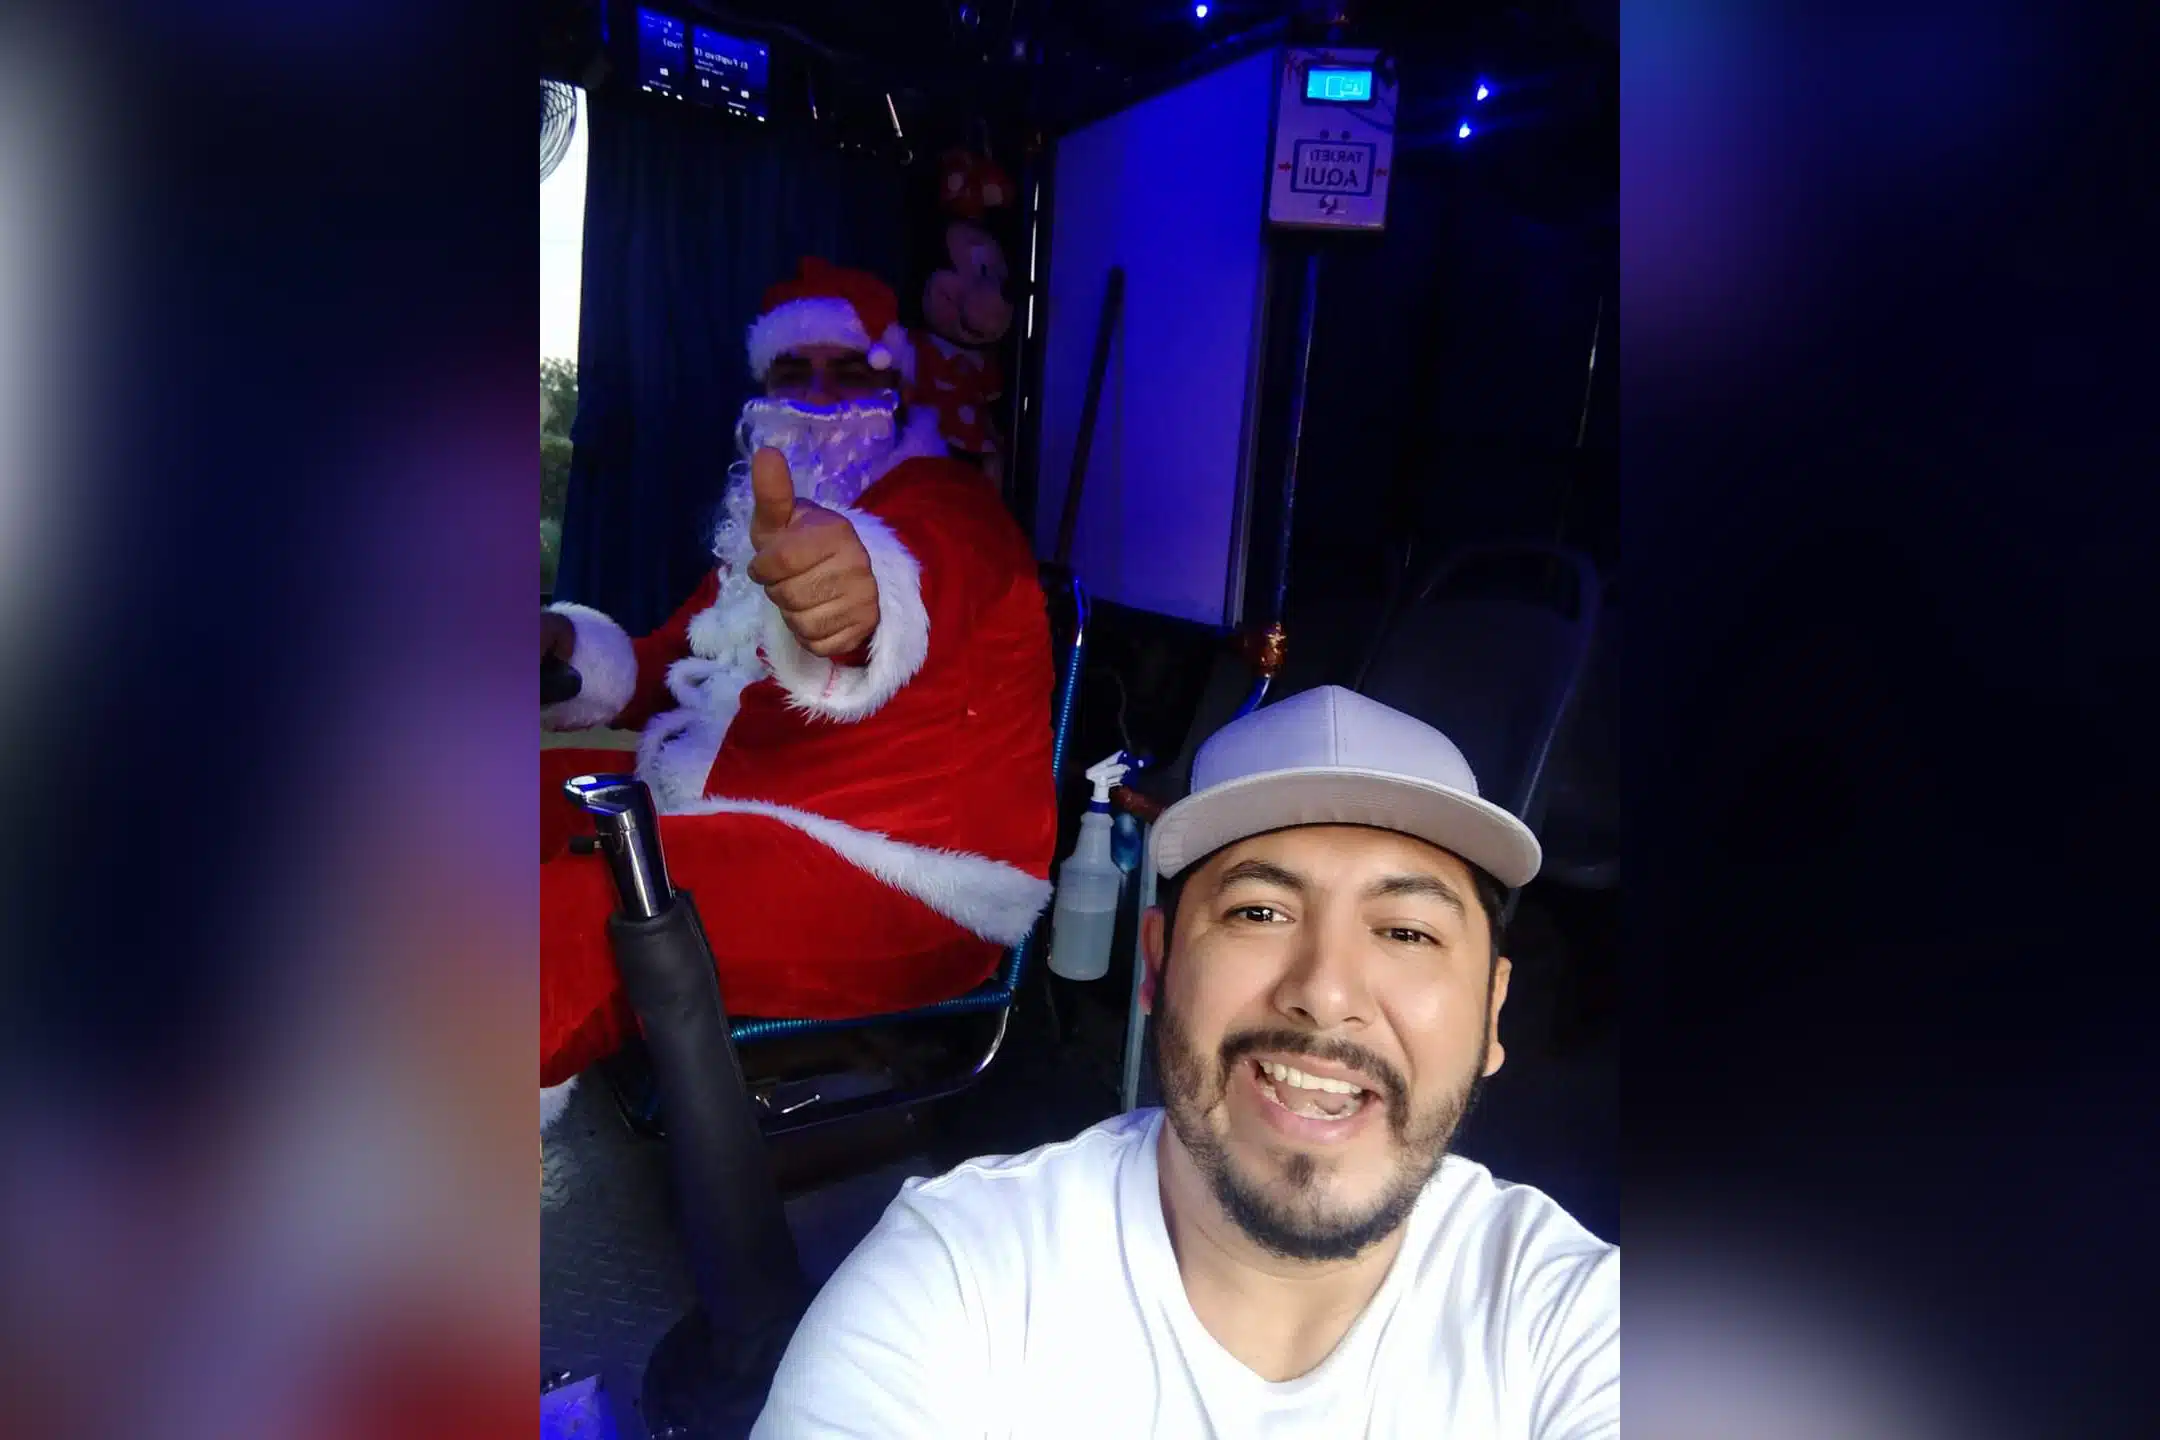 Santa Claus chofer Lomita Cañadas